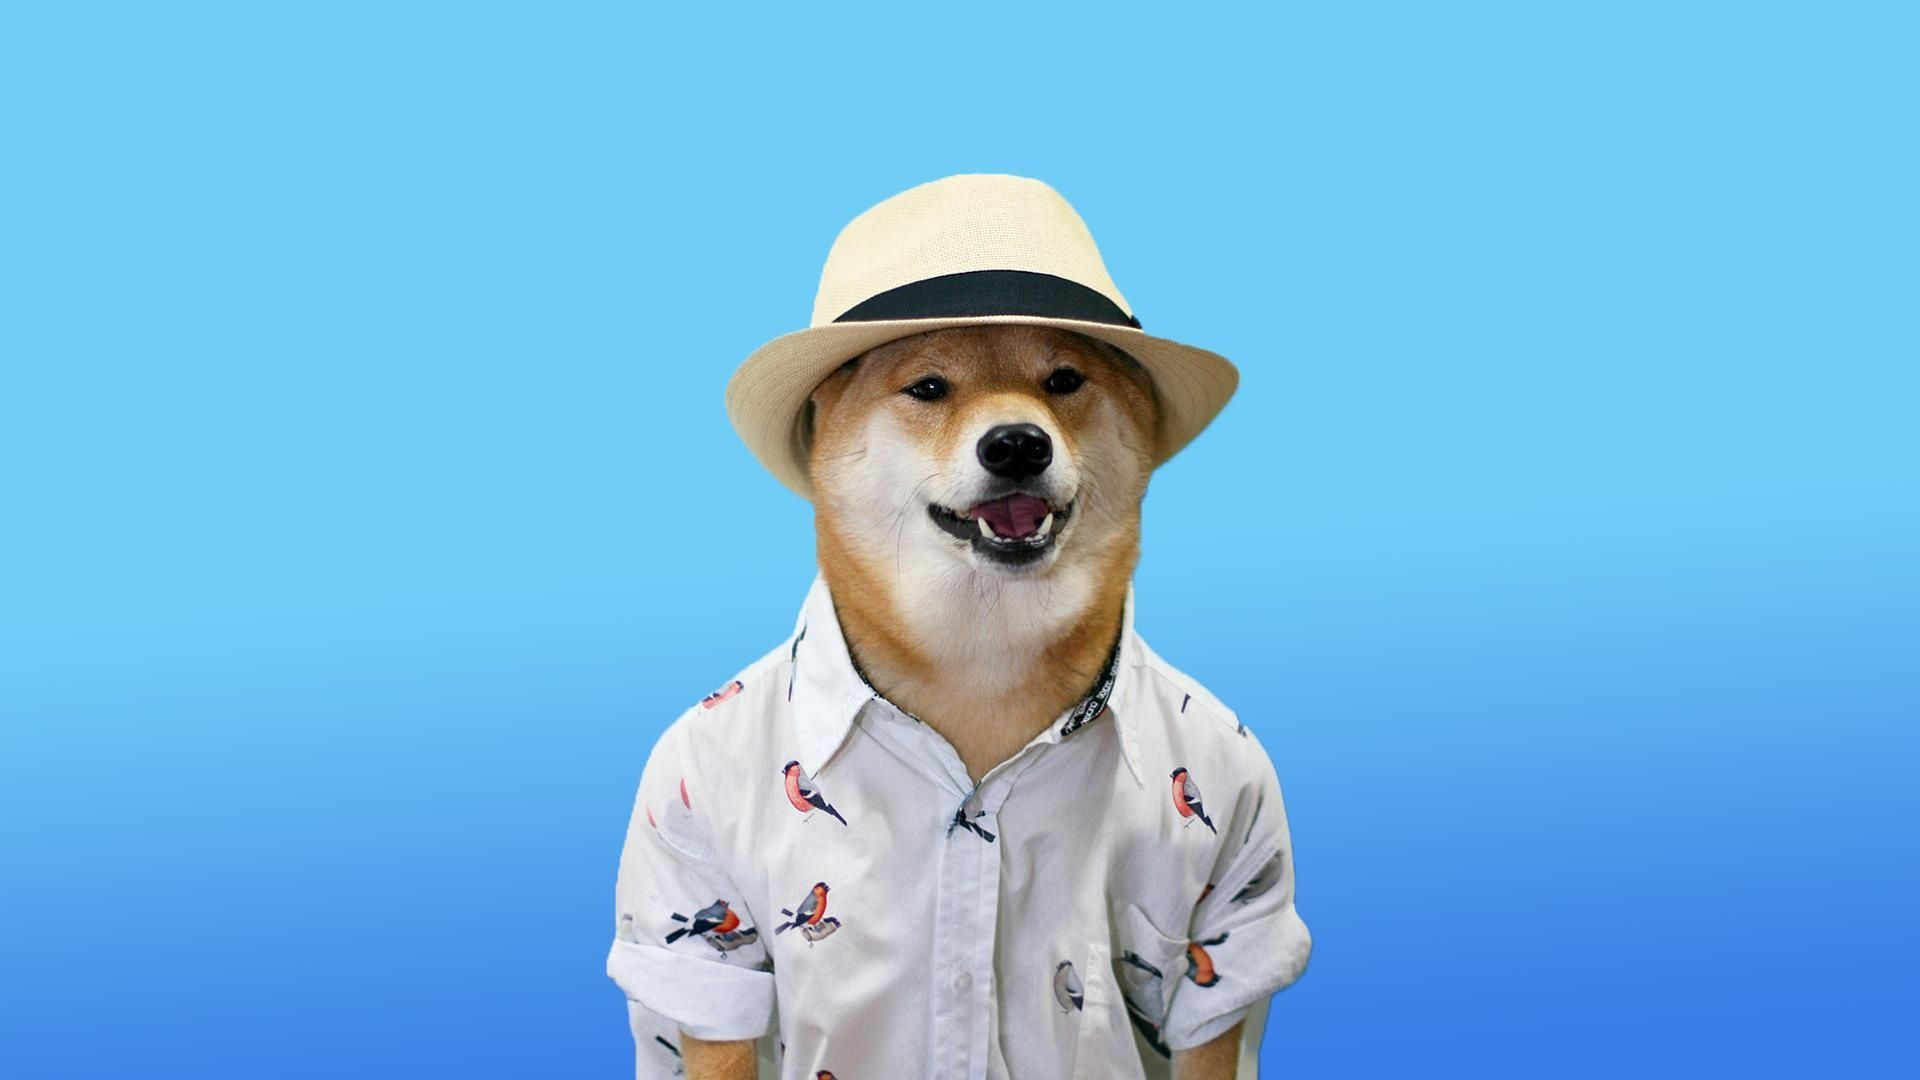 funny dog wallpaper meme